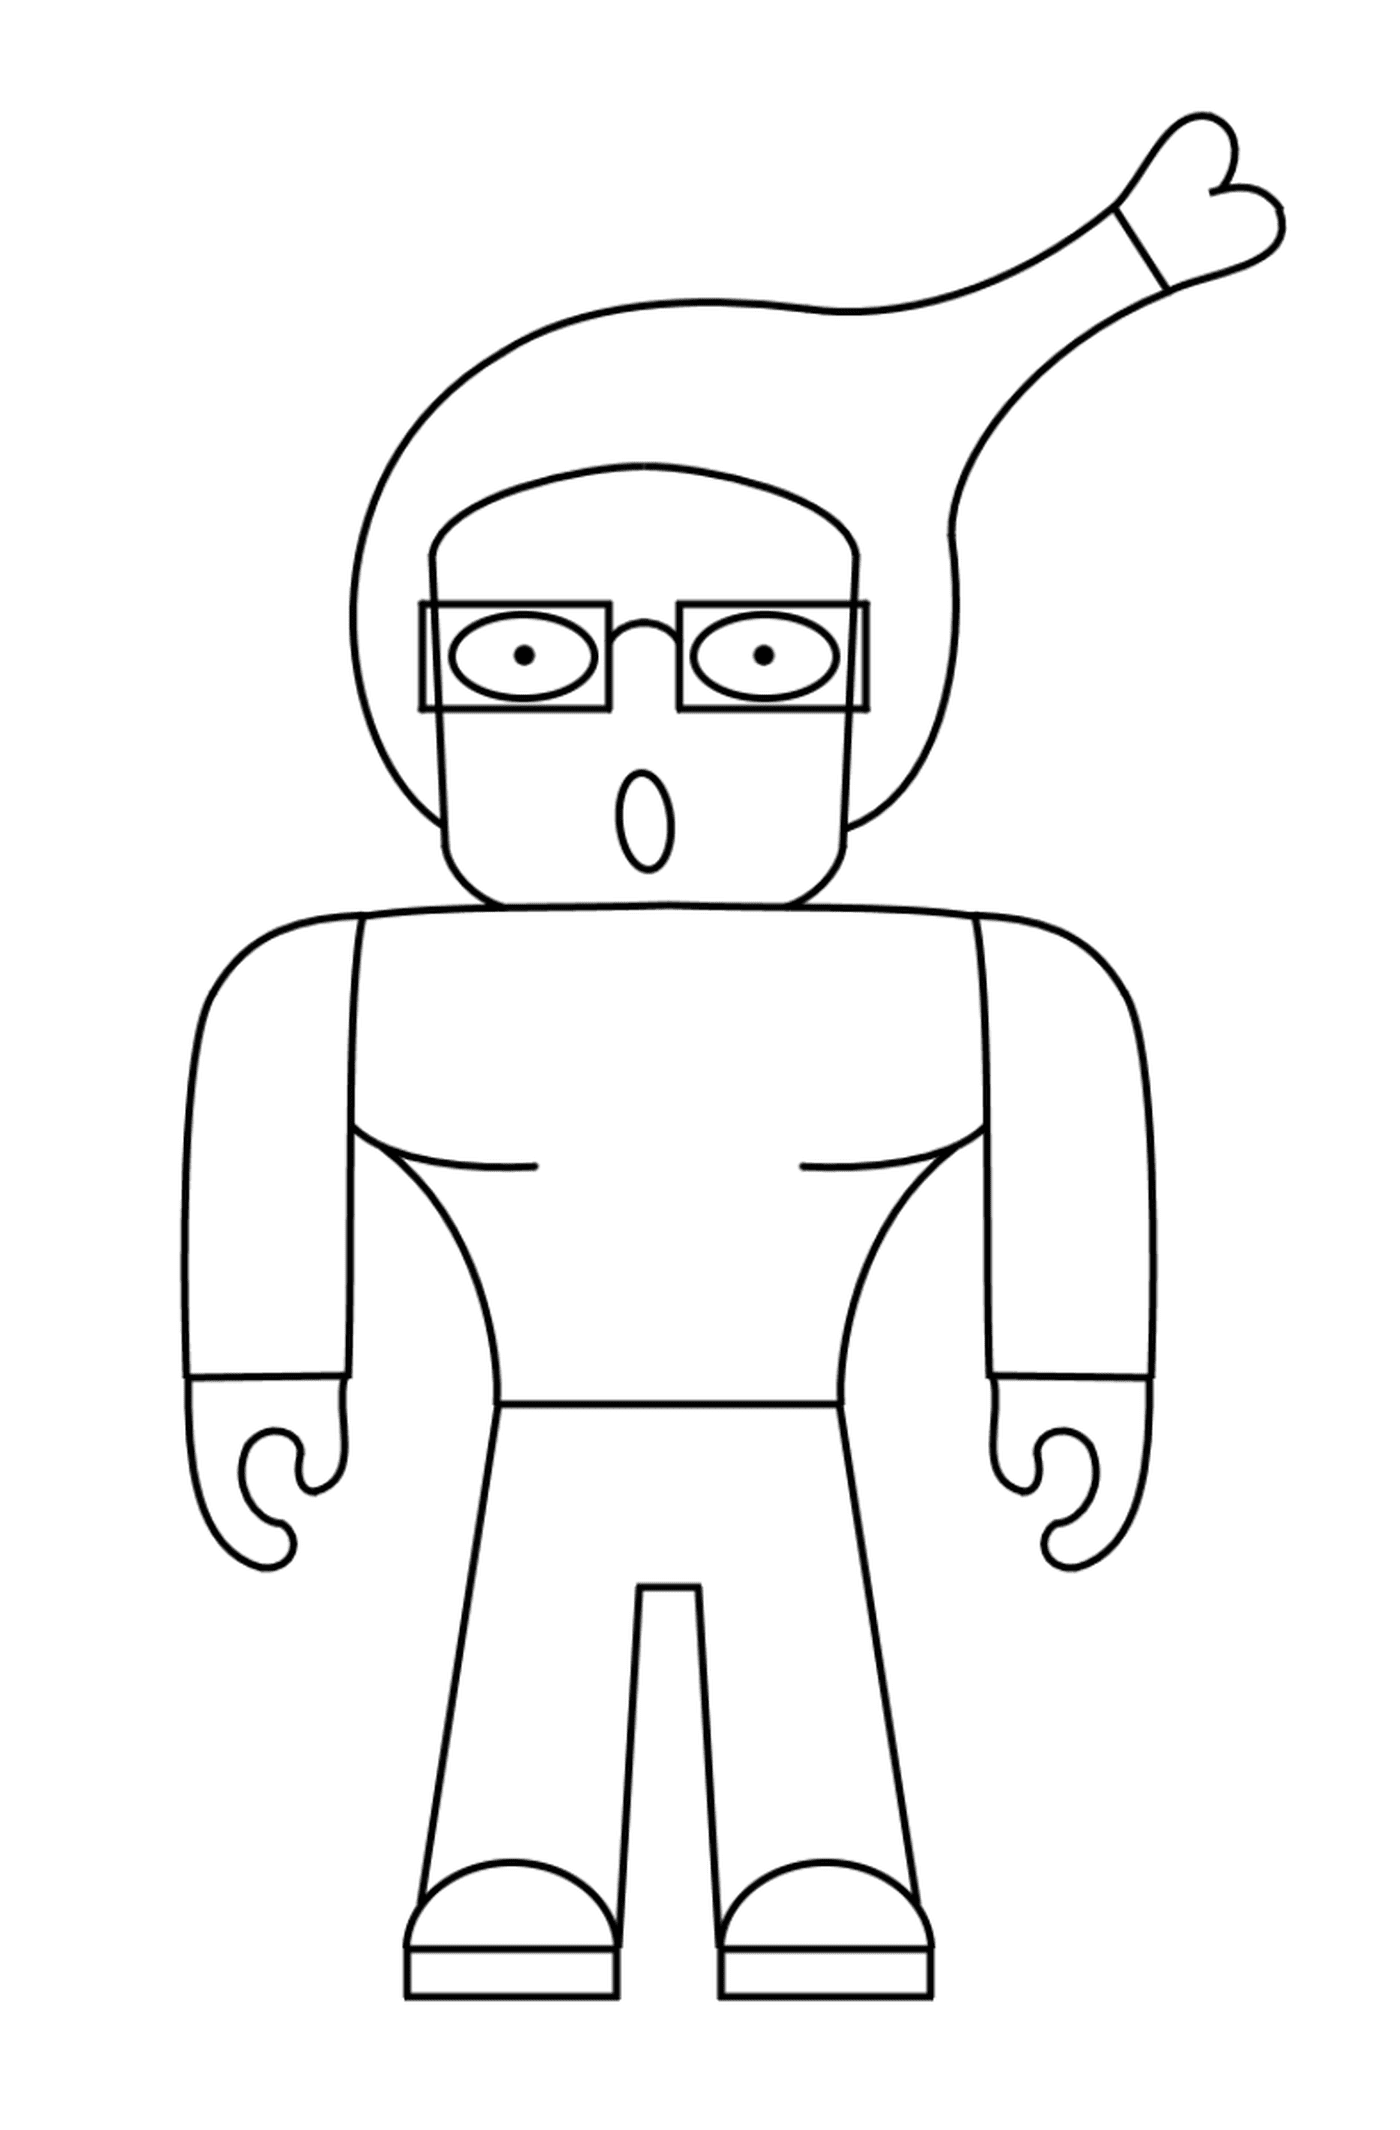  Strano personaggio umano Roblox 